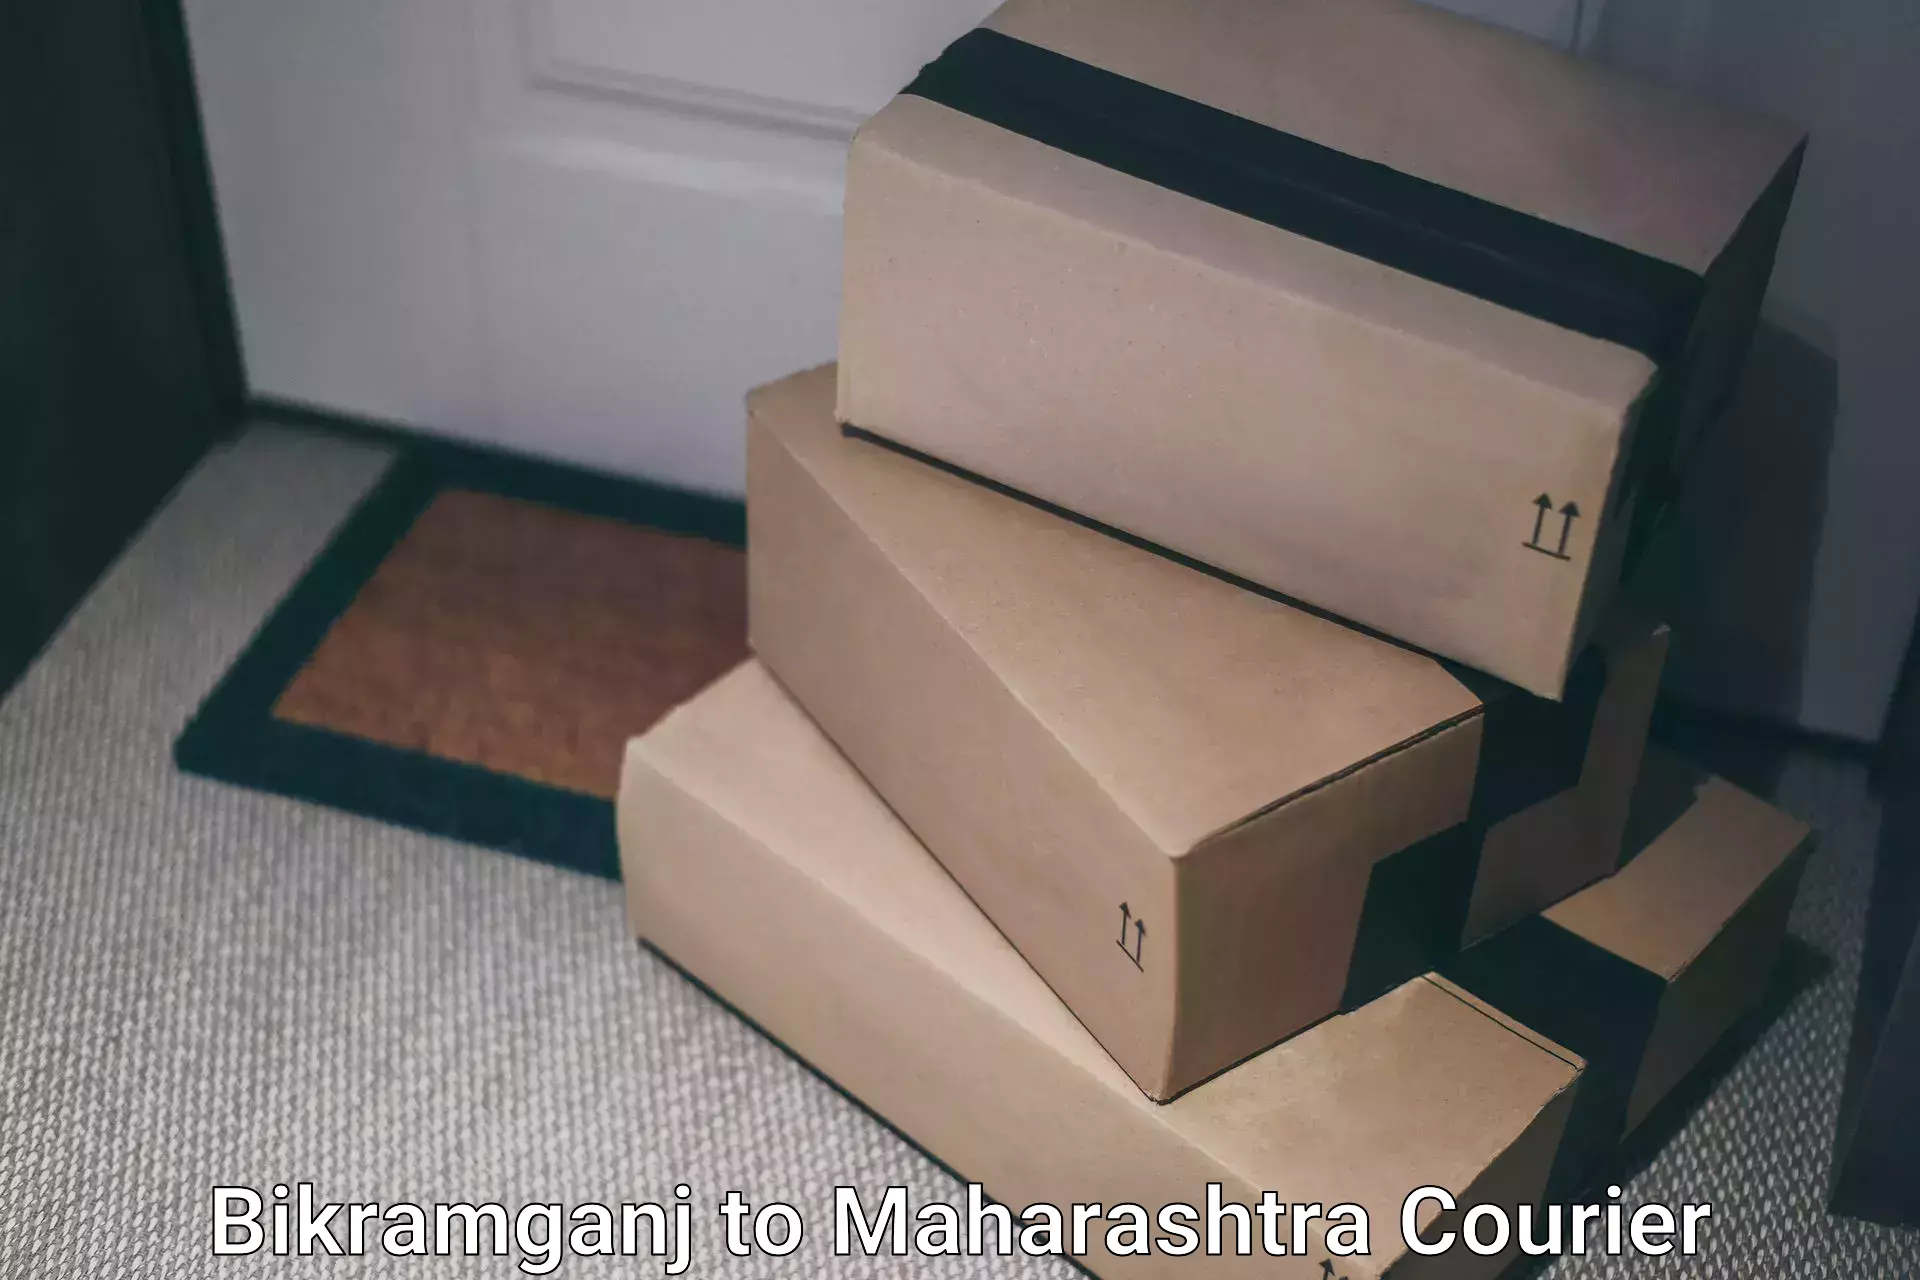 Express delivery capabilities Bikramganj to Maharashtra